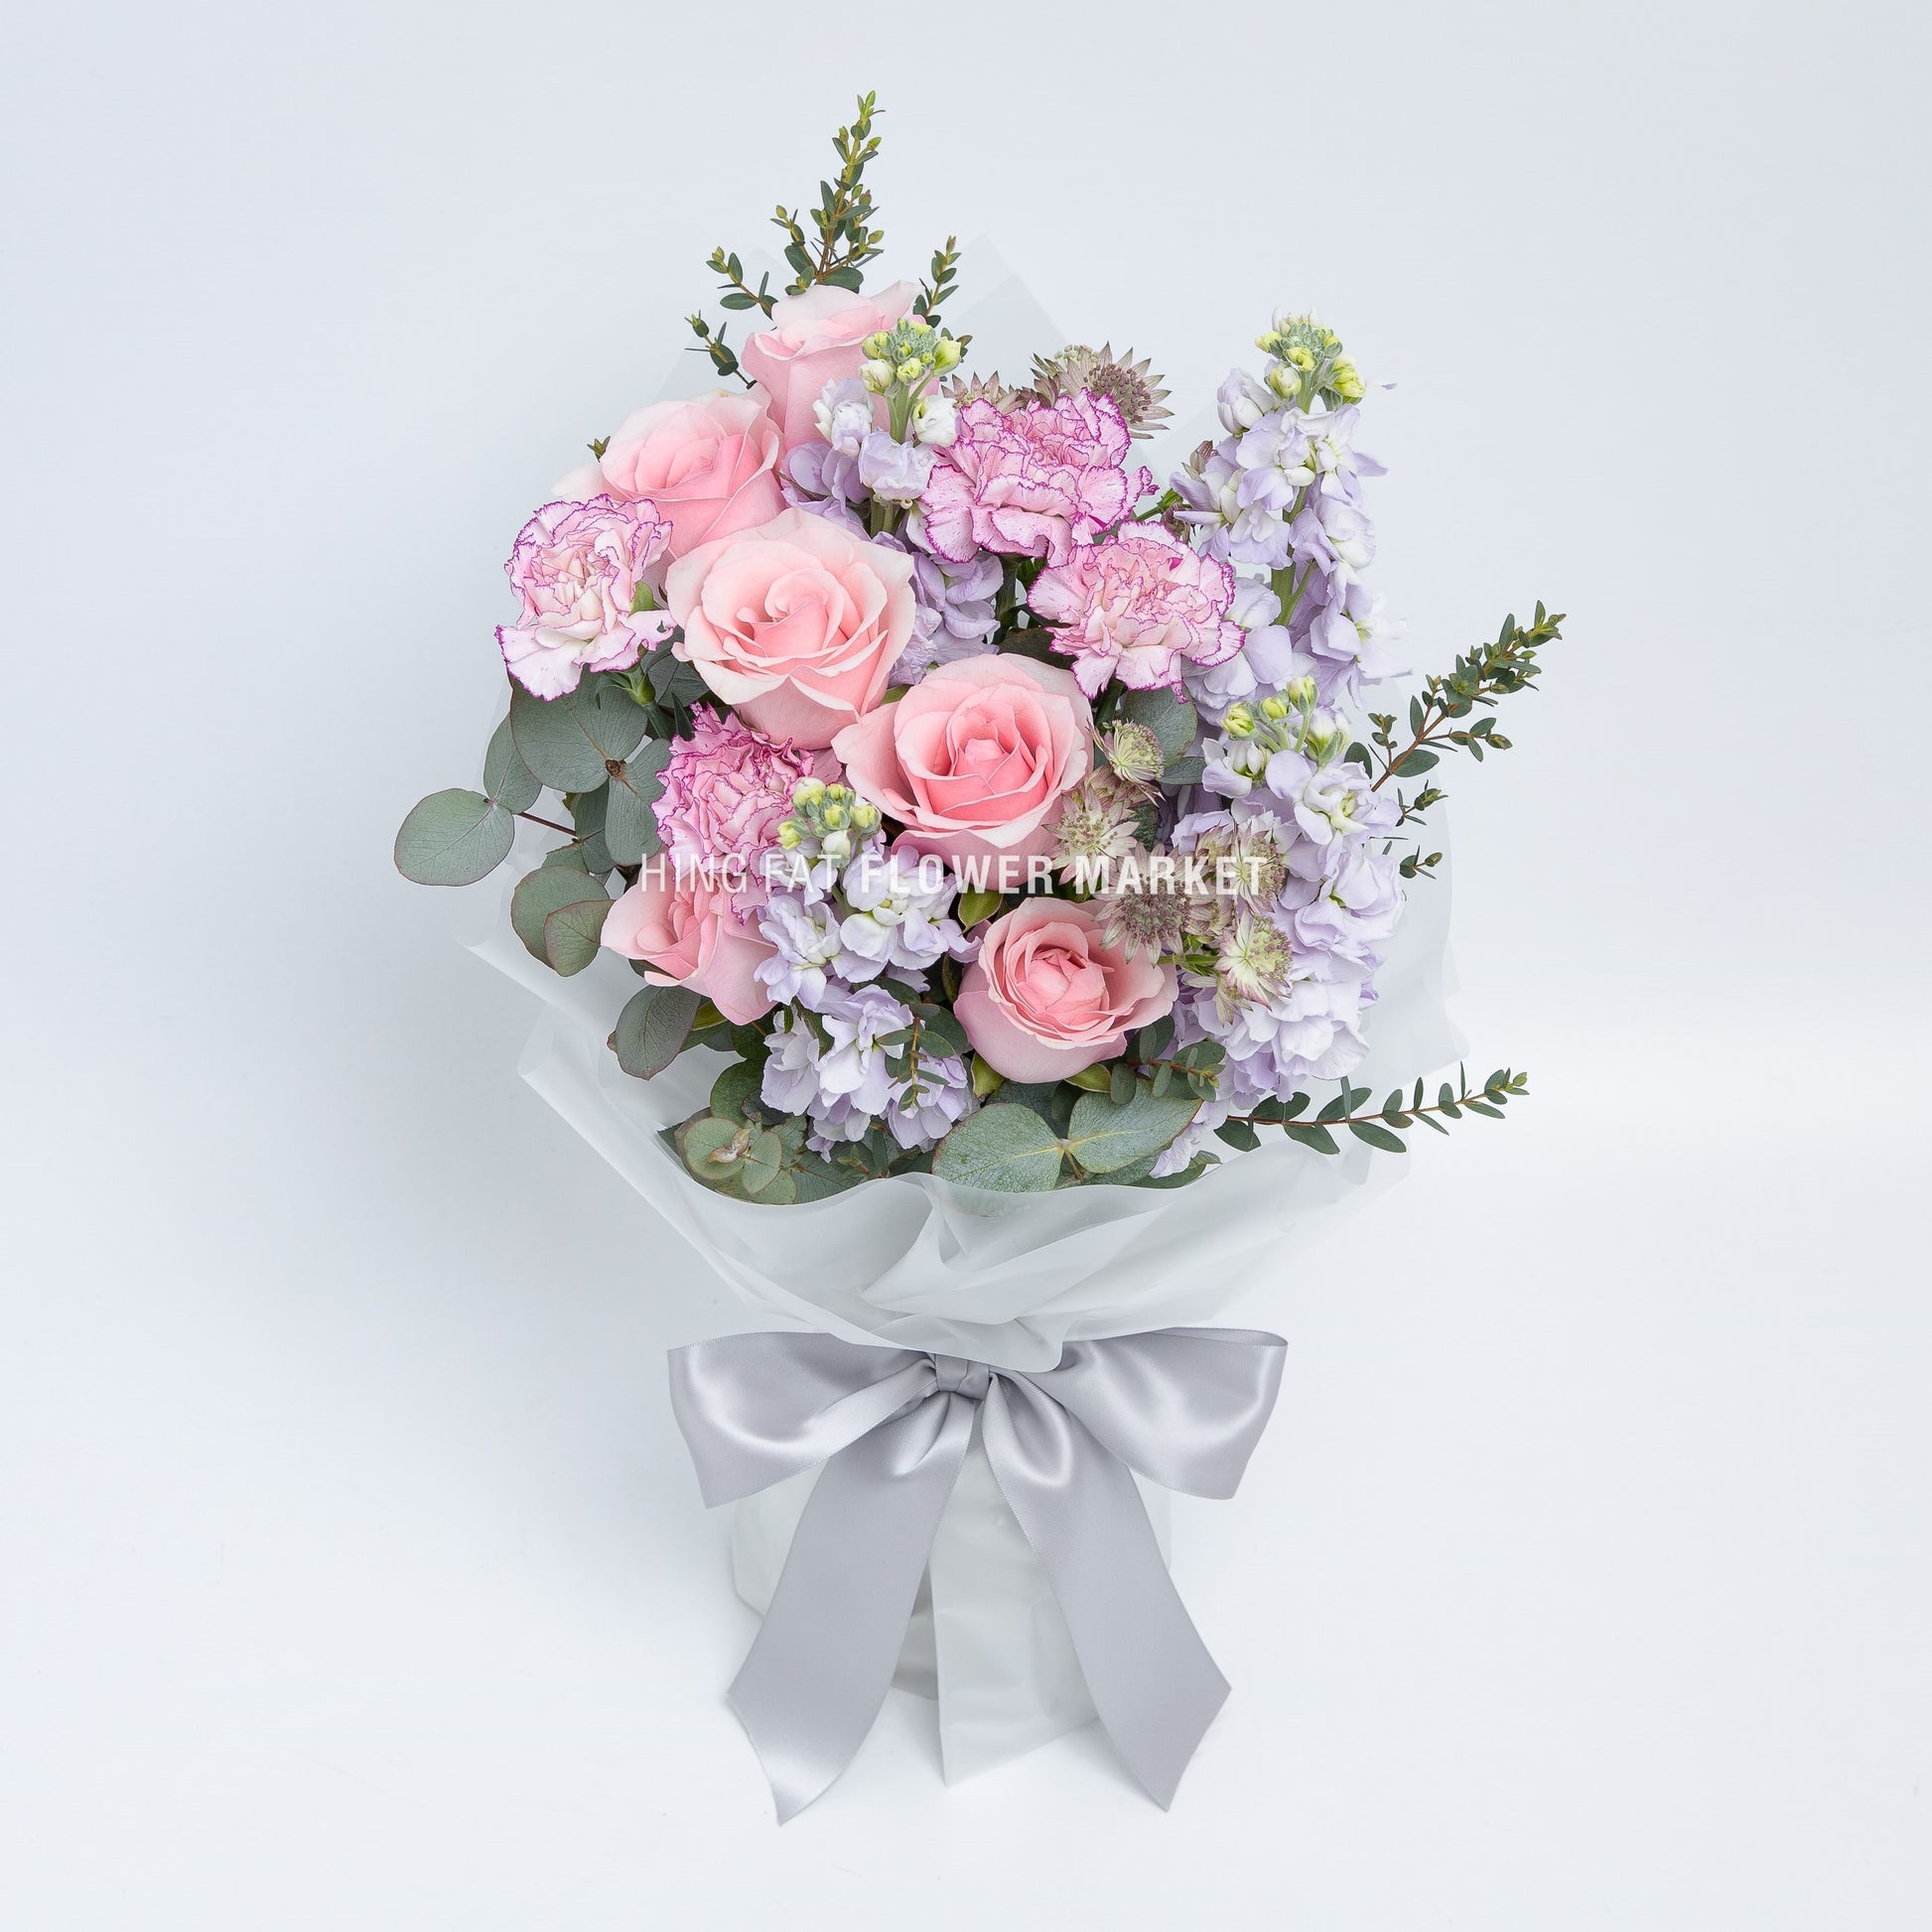 粉玫瑰康乃馨花束 Pink rose and carnation bouquet